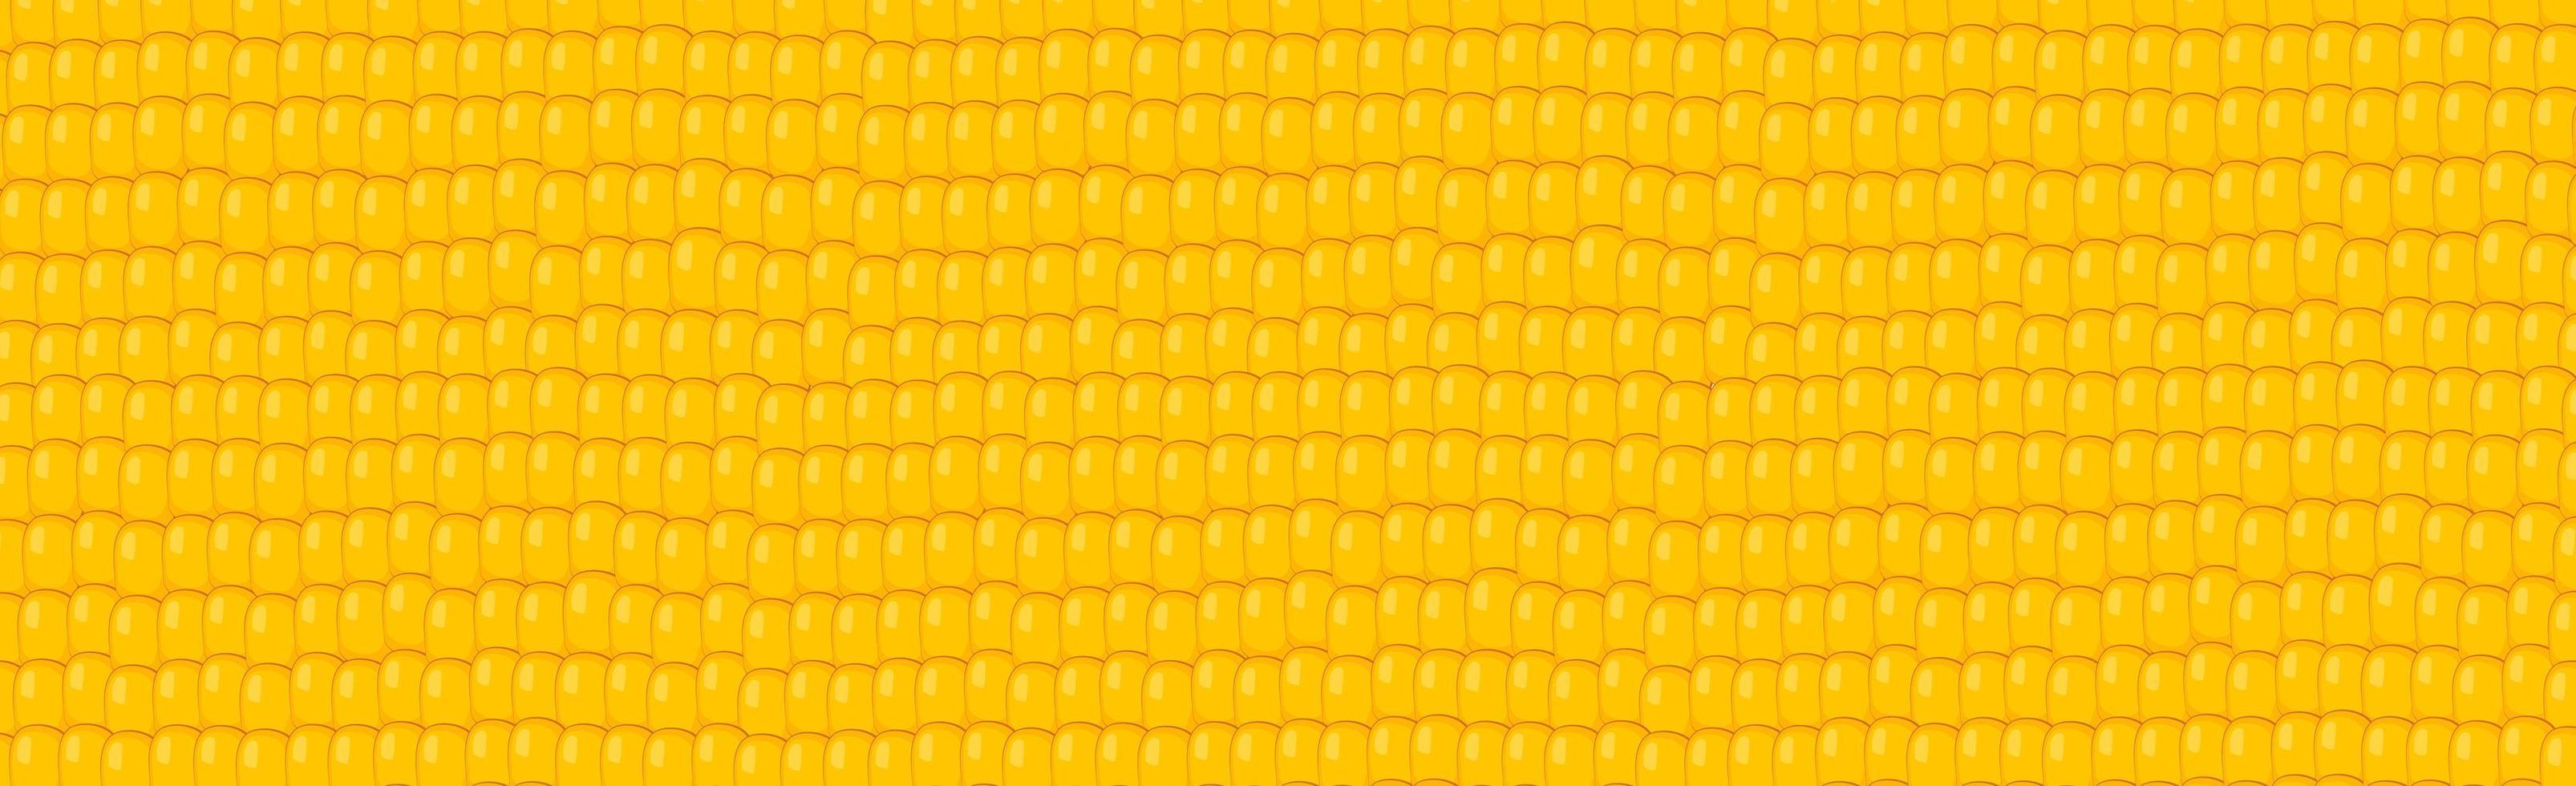 Panoramic yellow - orange corn grain background - Vector